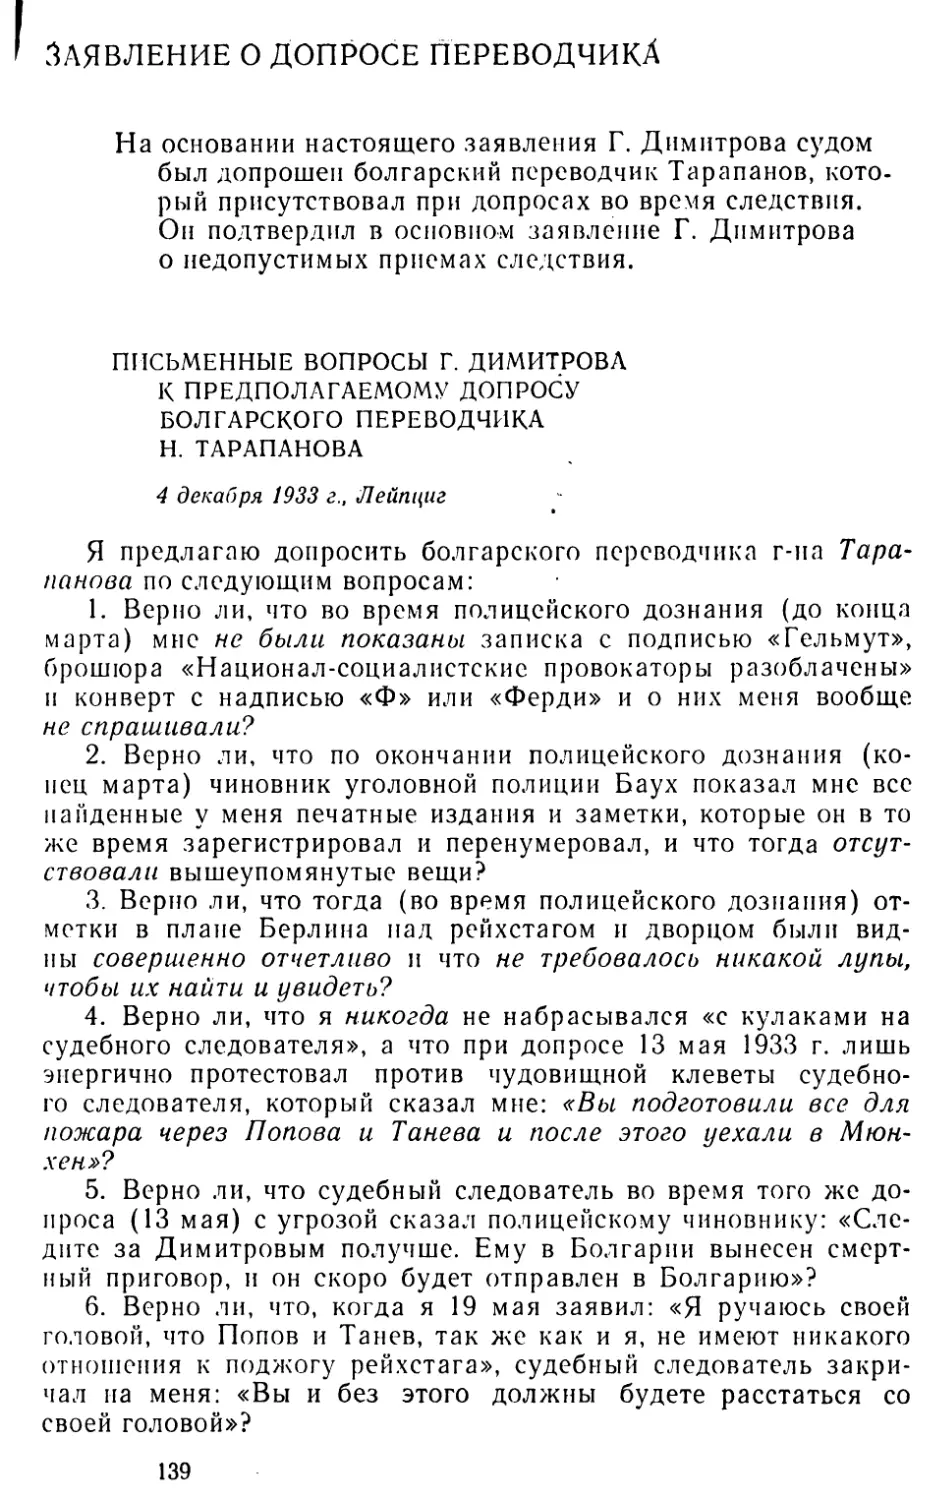 Заявление о допросе переводчика
Письменные вопросы Г. Димитрова к предполагаемому допросу болгарского переводчика Н. Тарапанова. 4 декабря 1933 г